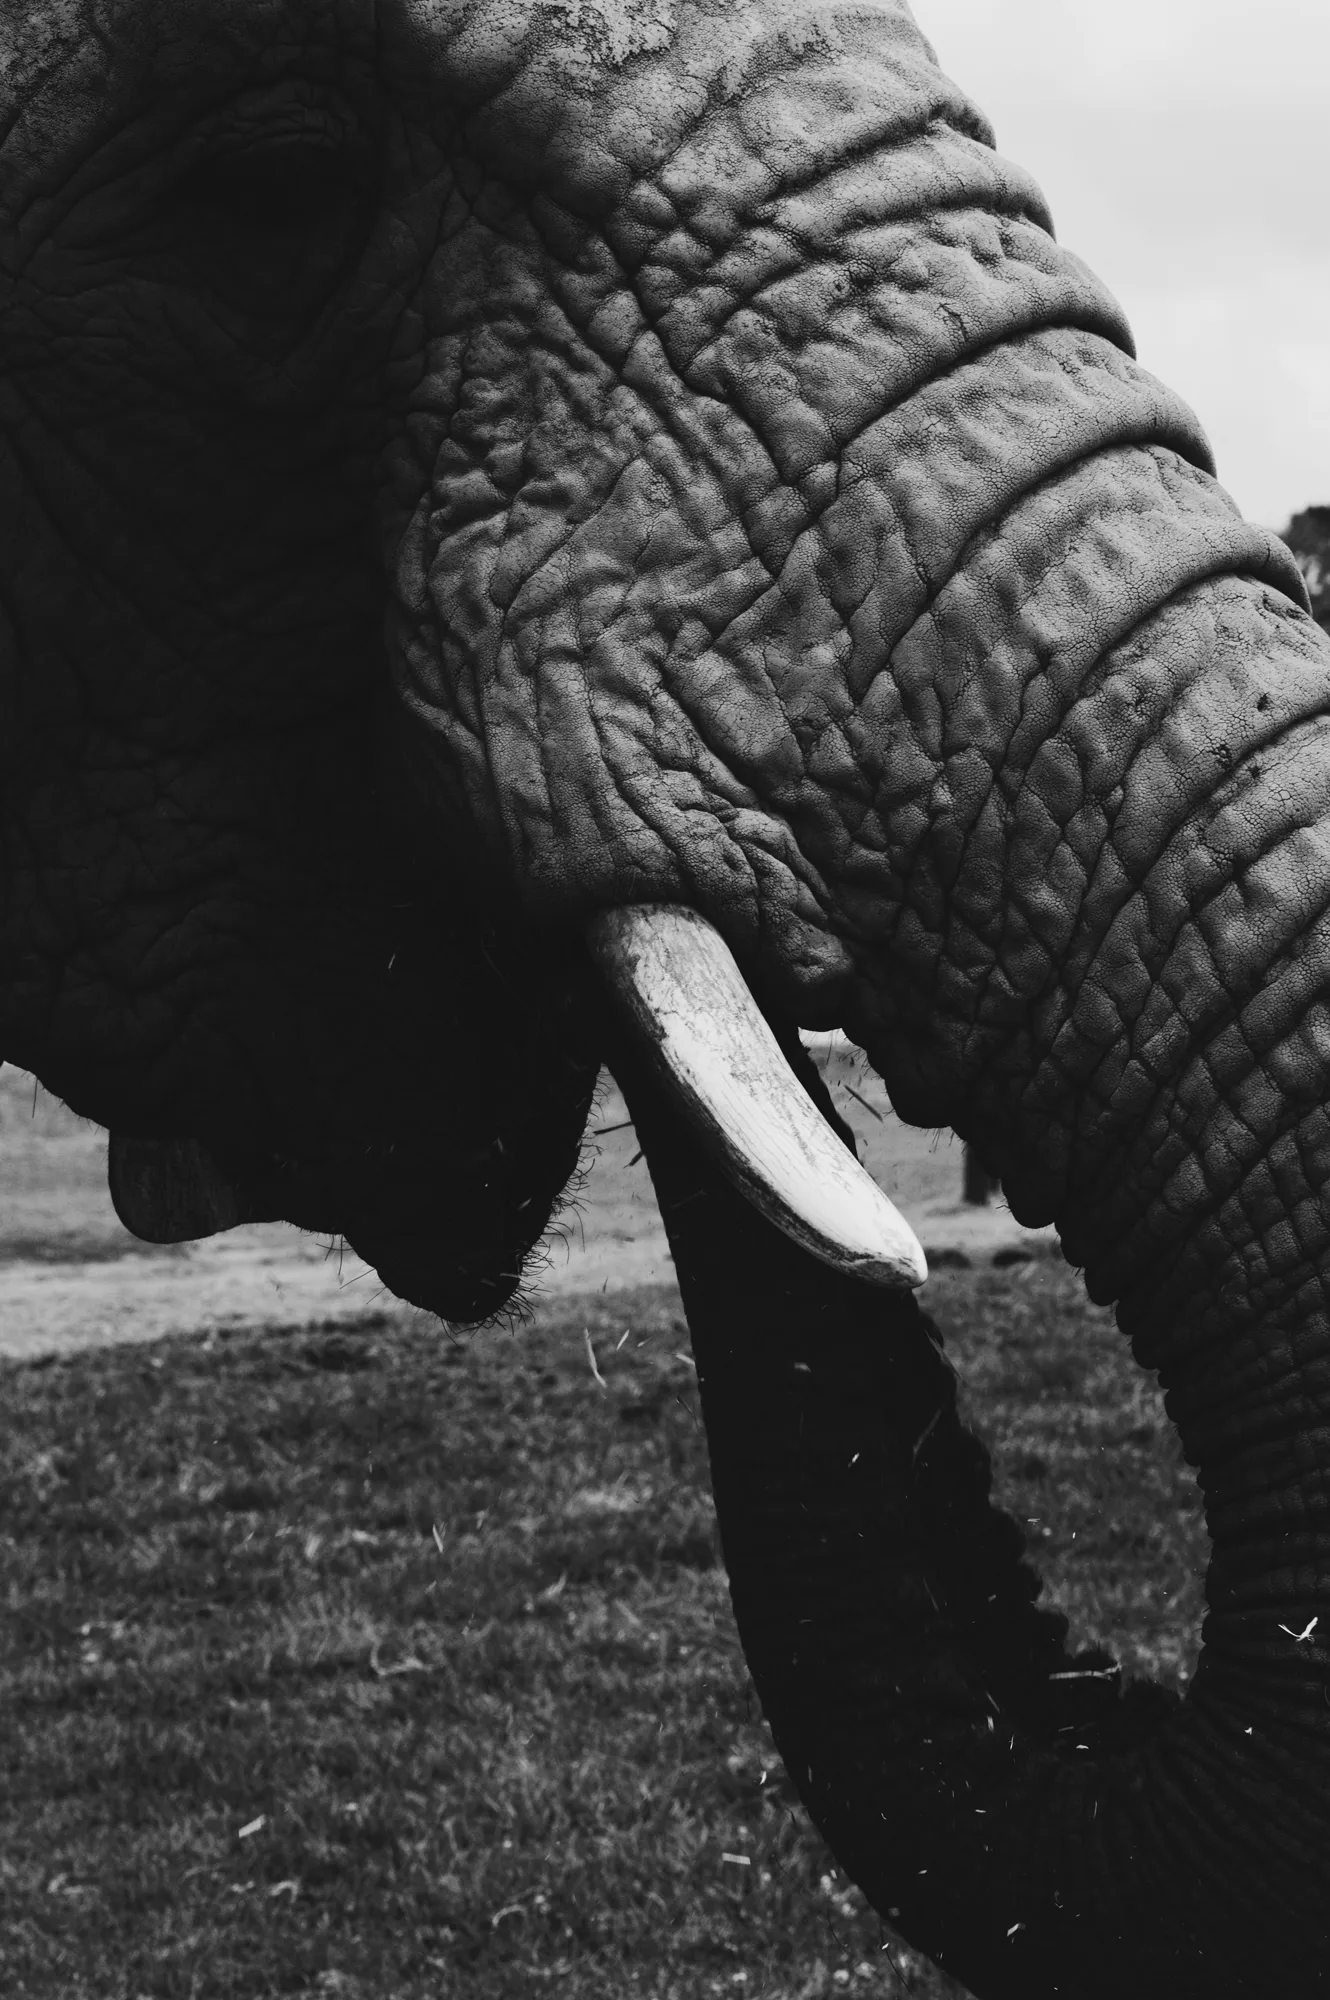 2018-12-24 - Knysna Elephant Park, Knysna - Elephant trunk